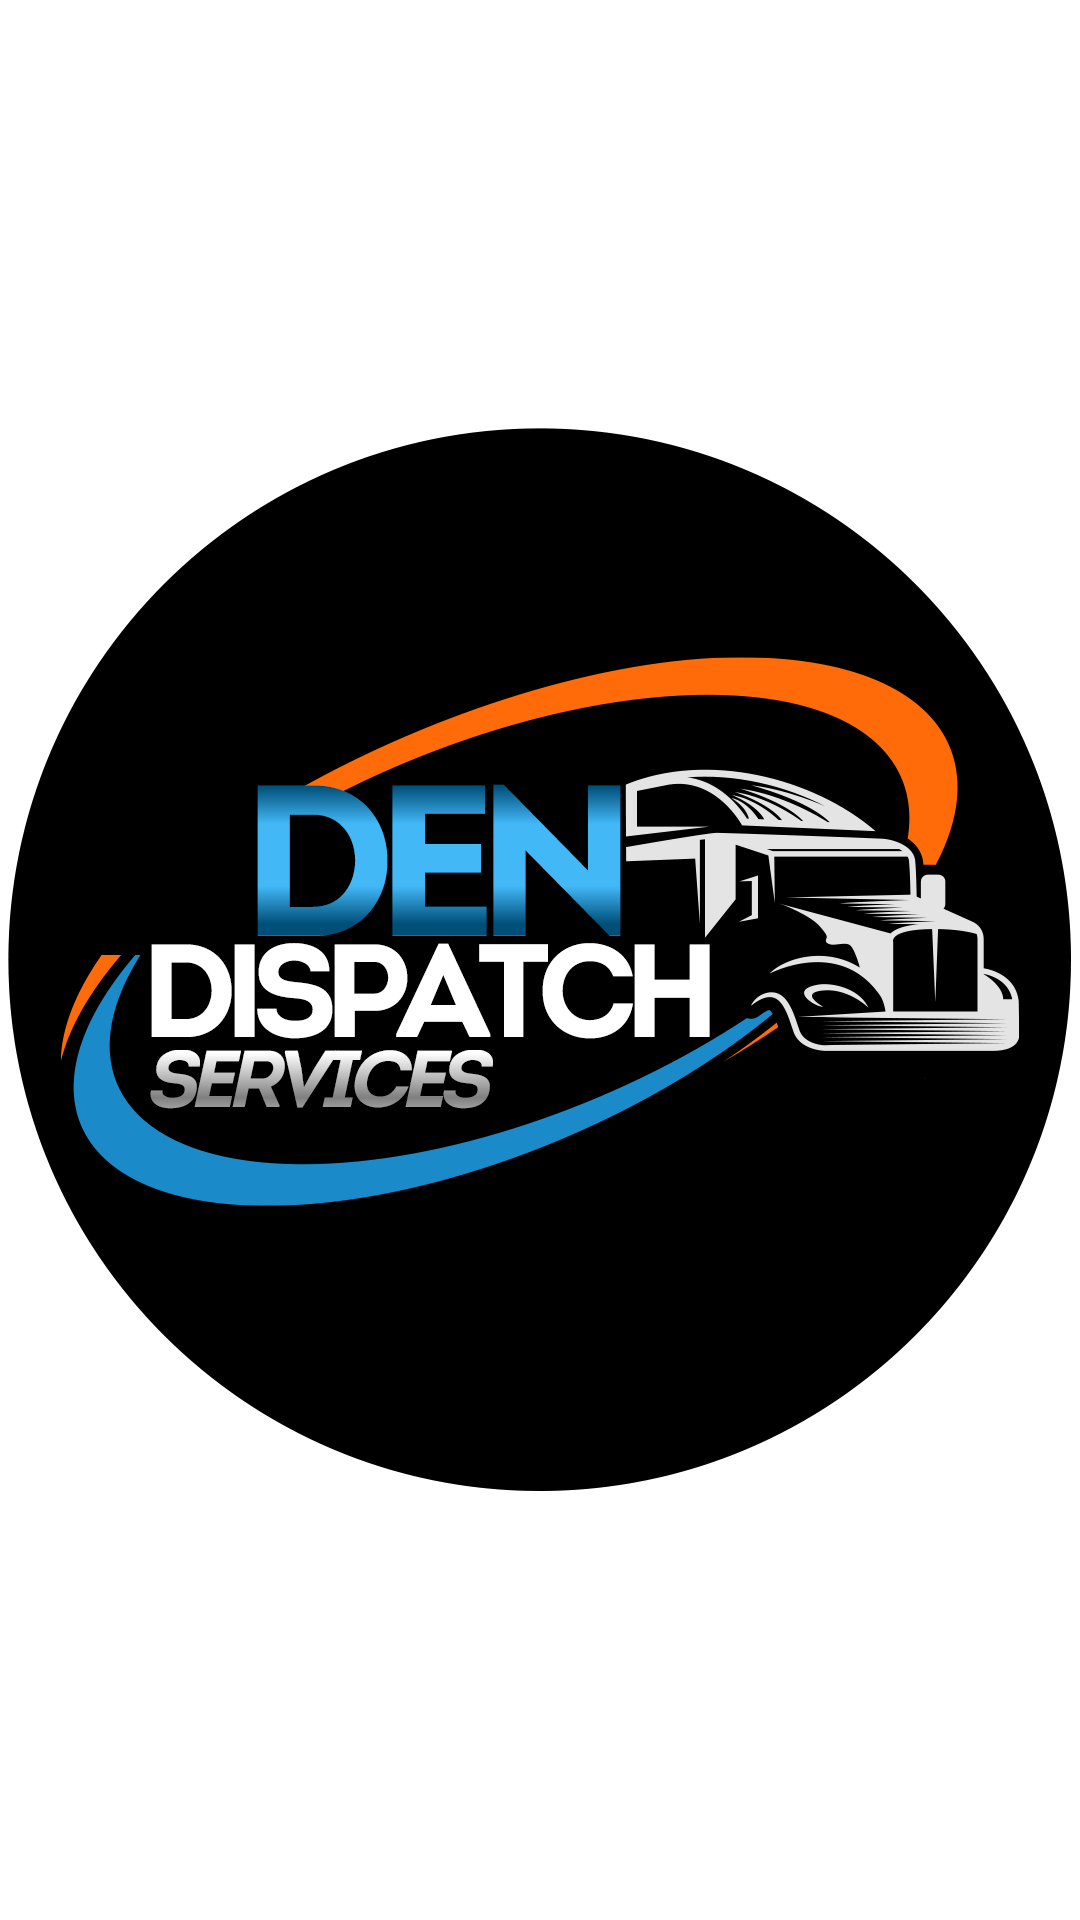 Den dispatch services